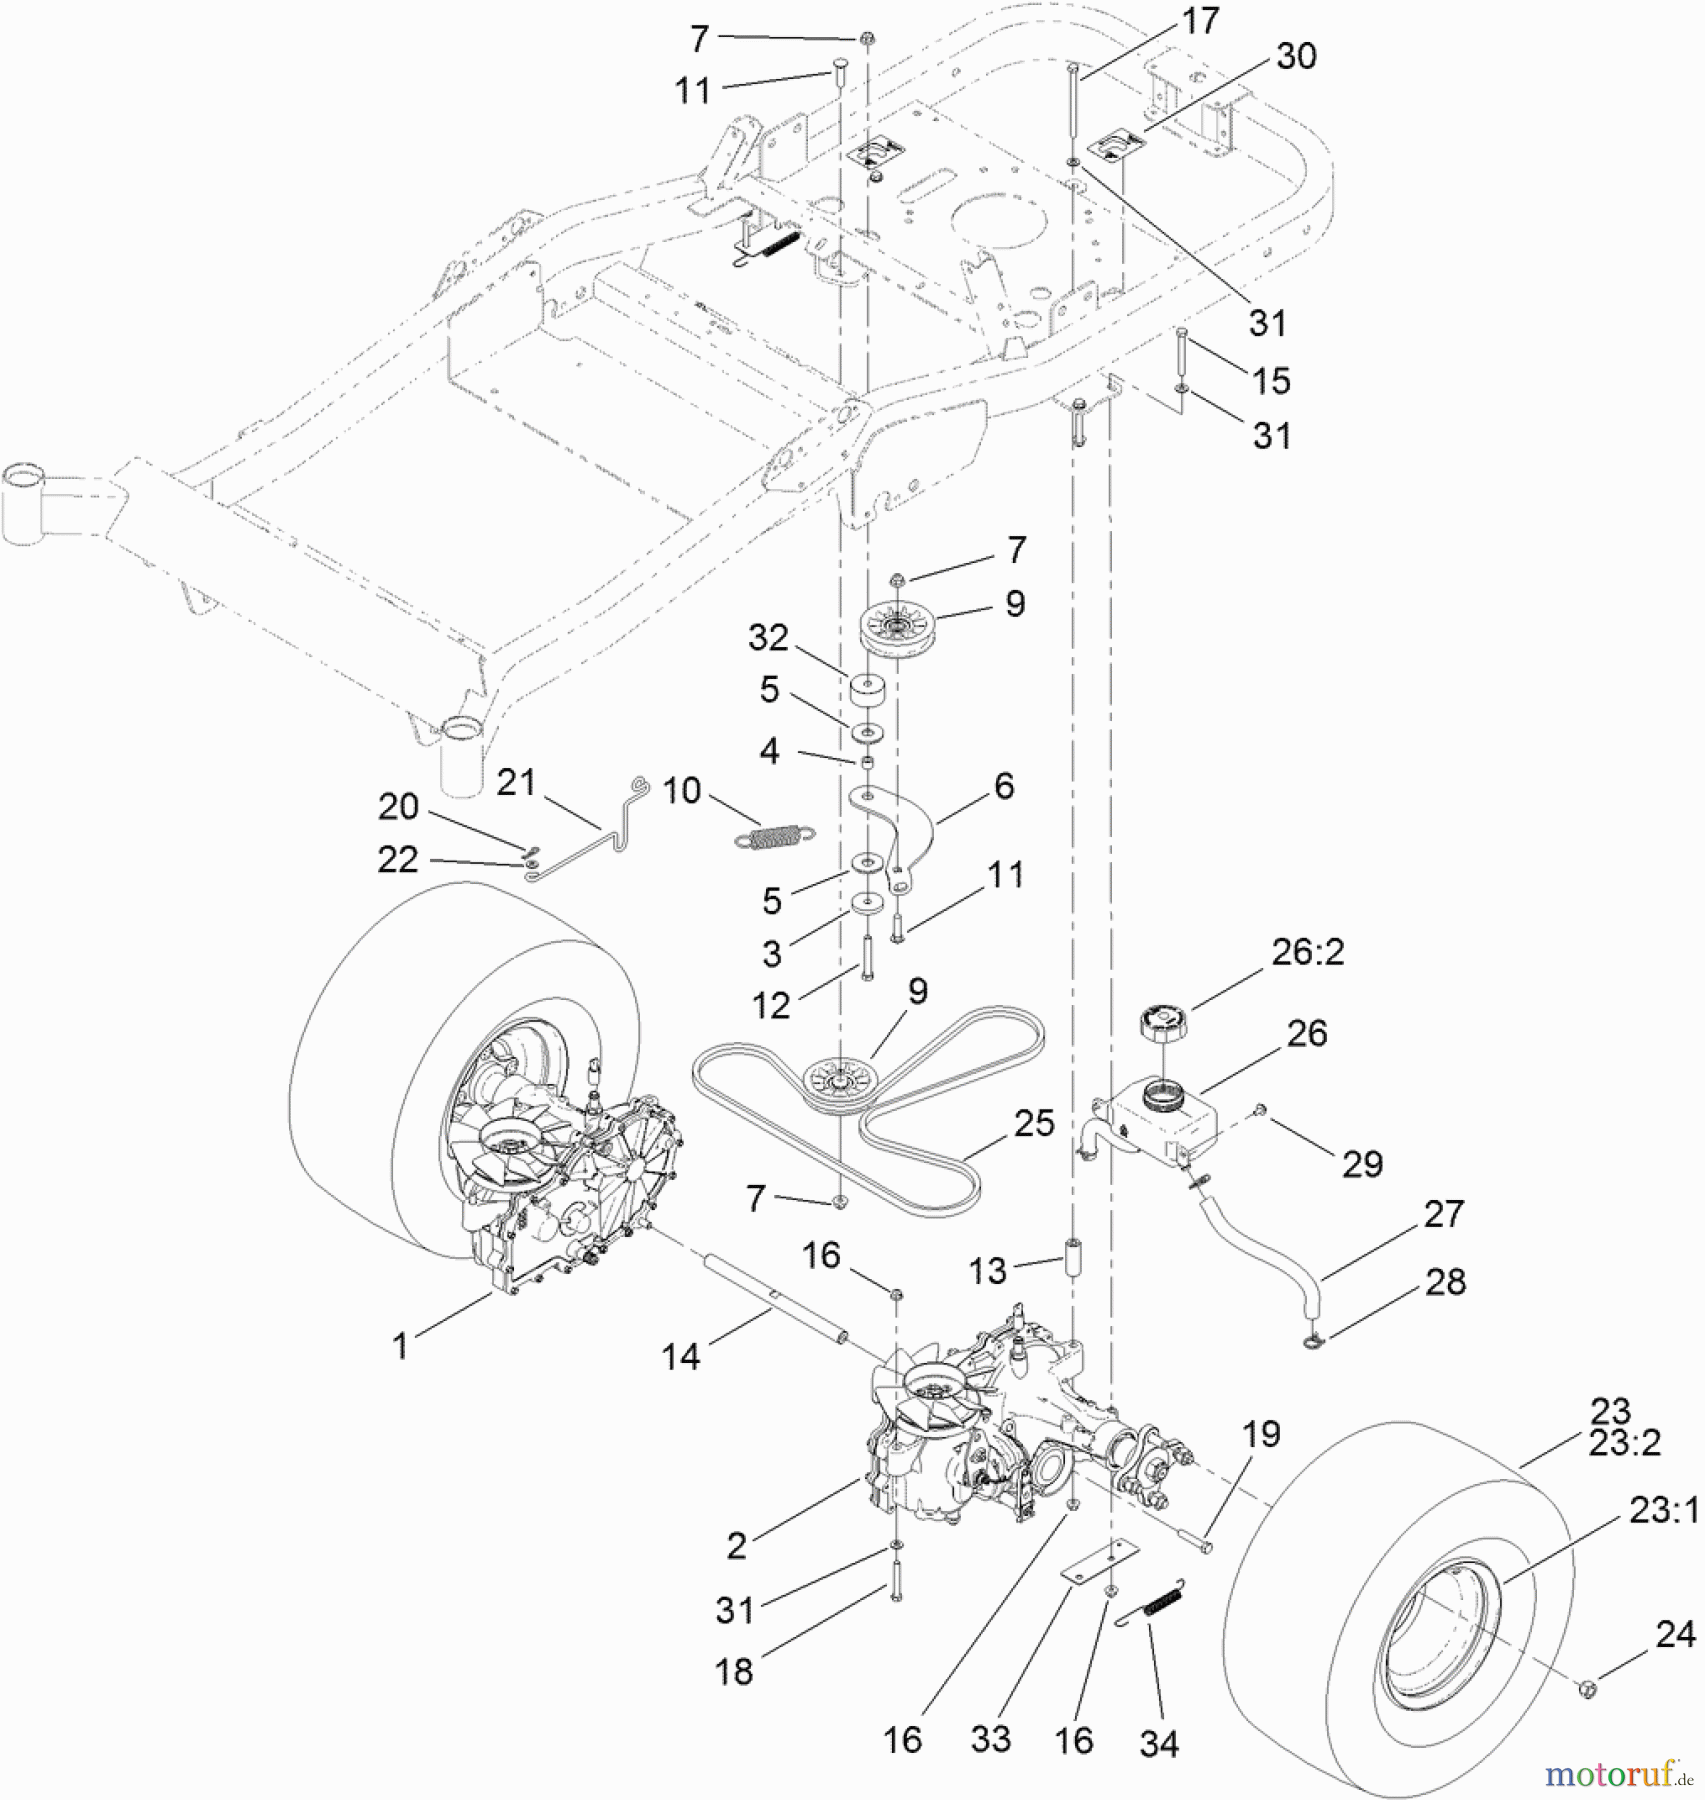  Toro Neu Mowers, Zero-Turn 74920 (ZX4820) - Toro TITAN ZX4820 Zero-Turn-Radius Riding Mower, 2011 (311000001-311999999) TRACTION DRIVE ASSEMBLY